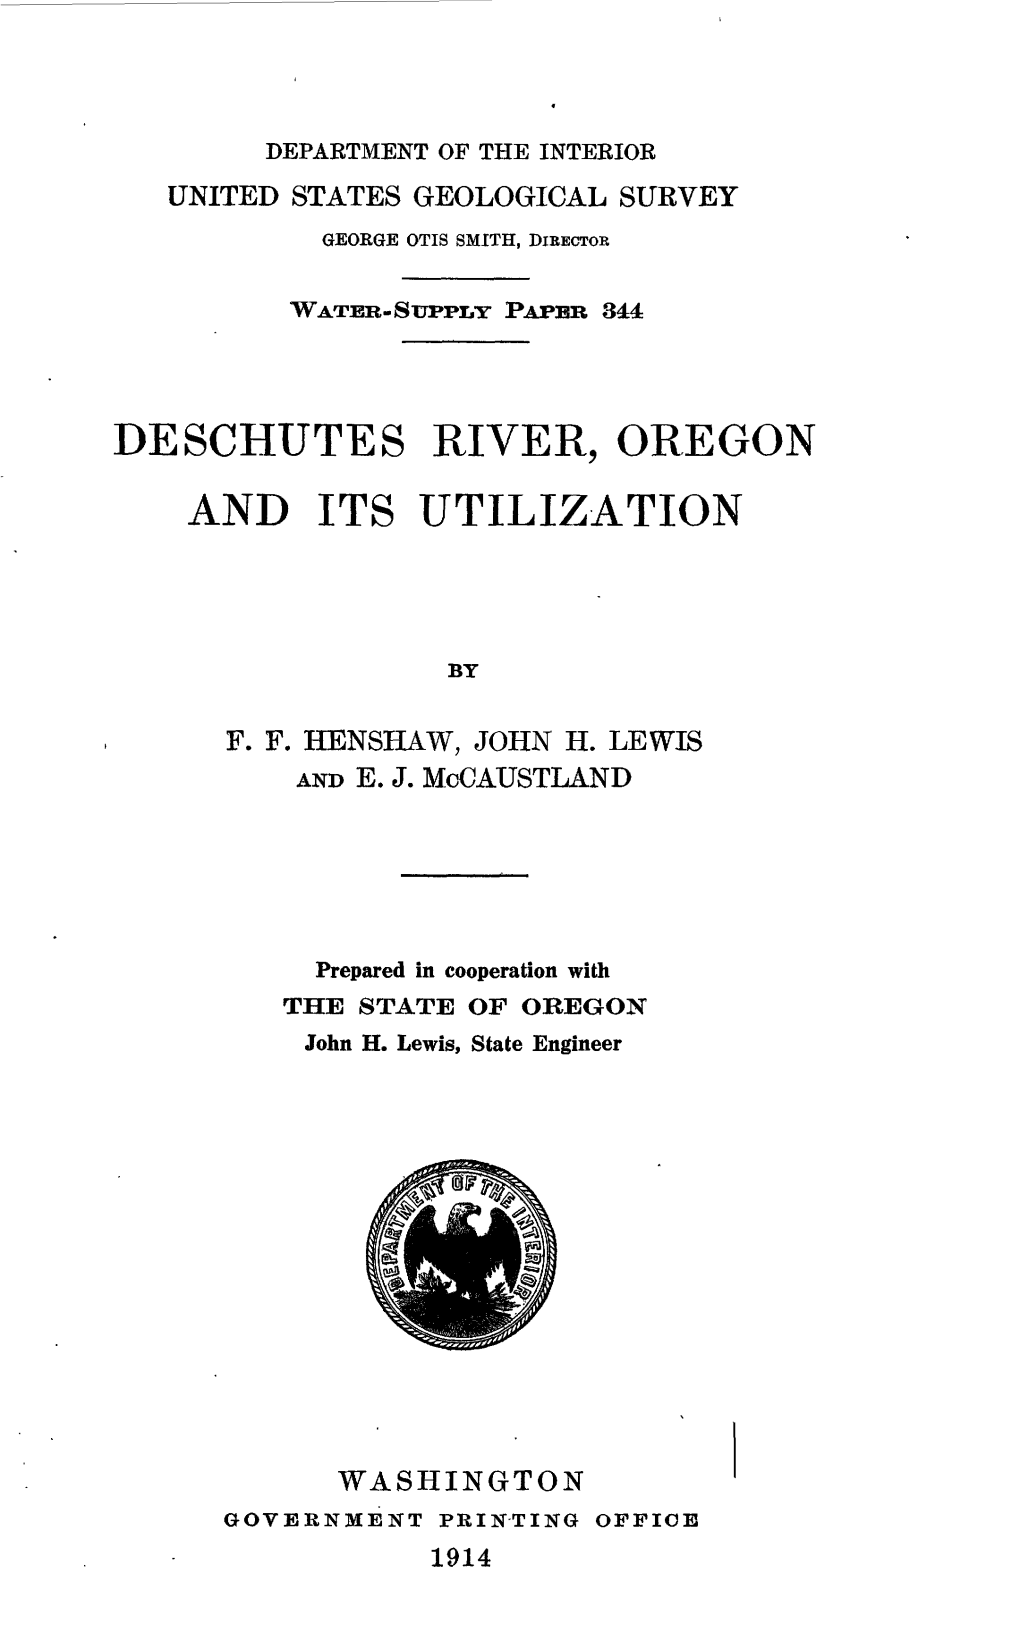 Deschutes River, Oregon and Its Utilization